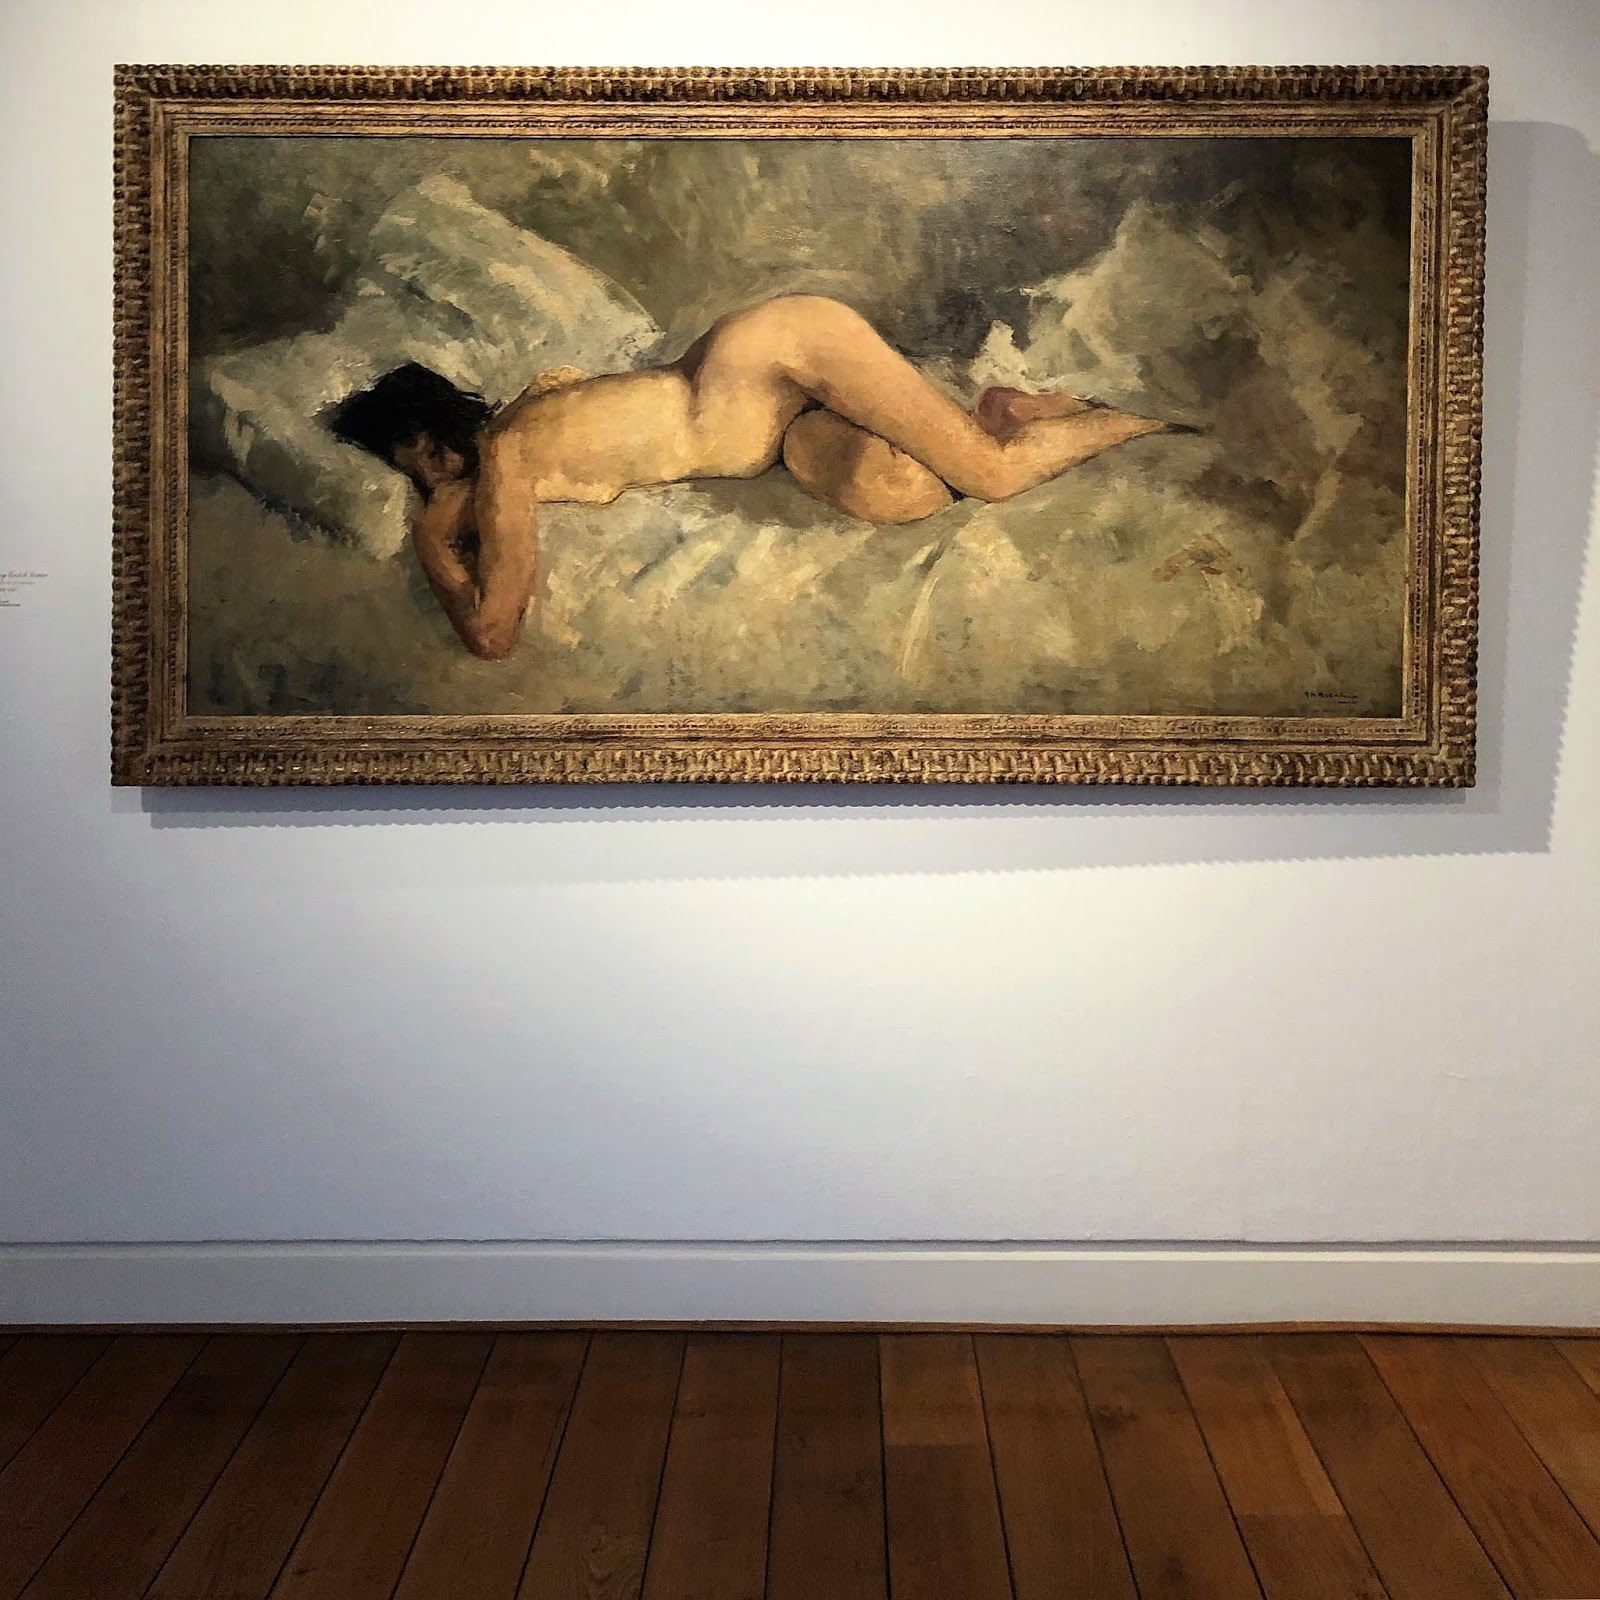 Naakt of Bloot in Museum Jan Cunen in Oss vrouwelijk naakt in de kunst afbeelding